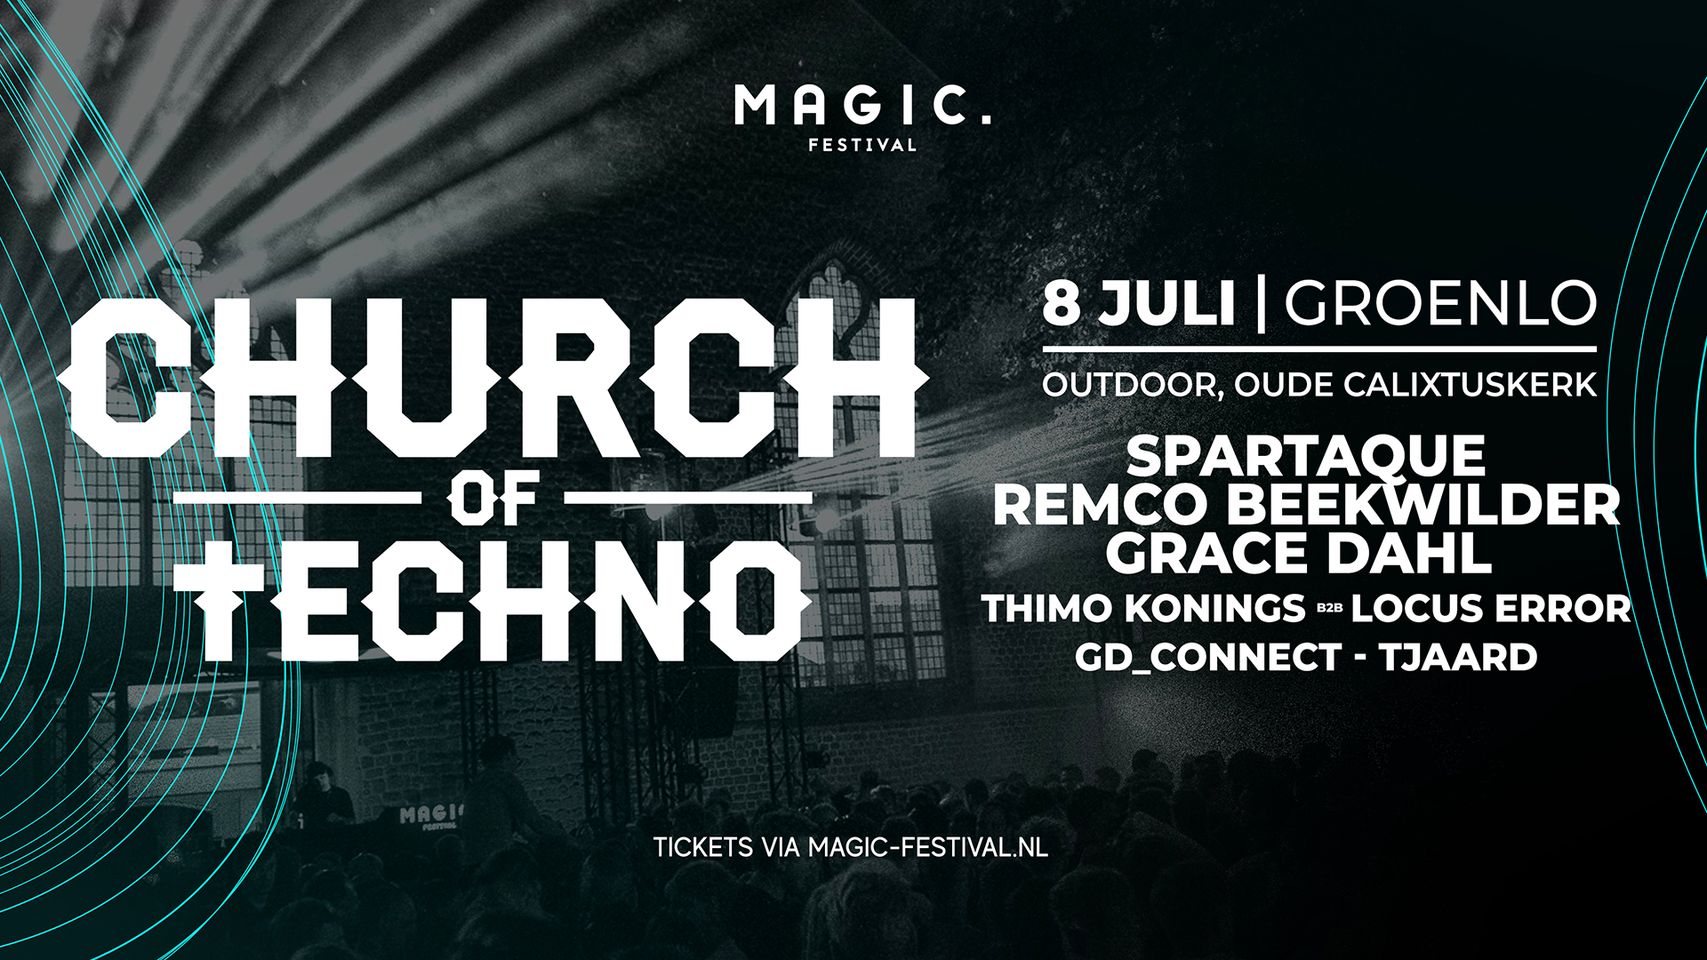 Magic festival presents: Church of Techno